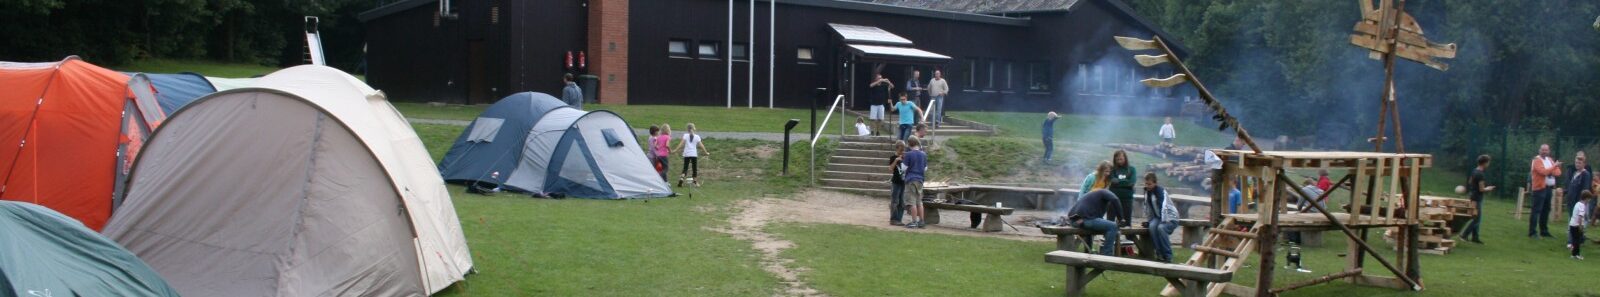 Jugendzeltplatz Finkenheide, hier beim alljährlichen Vater-Kind-Zelten des Kreises Düren